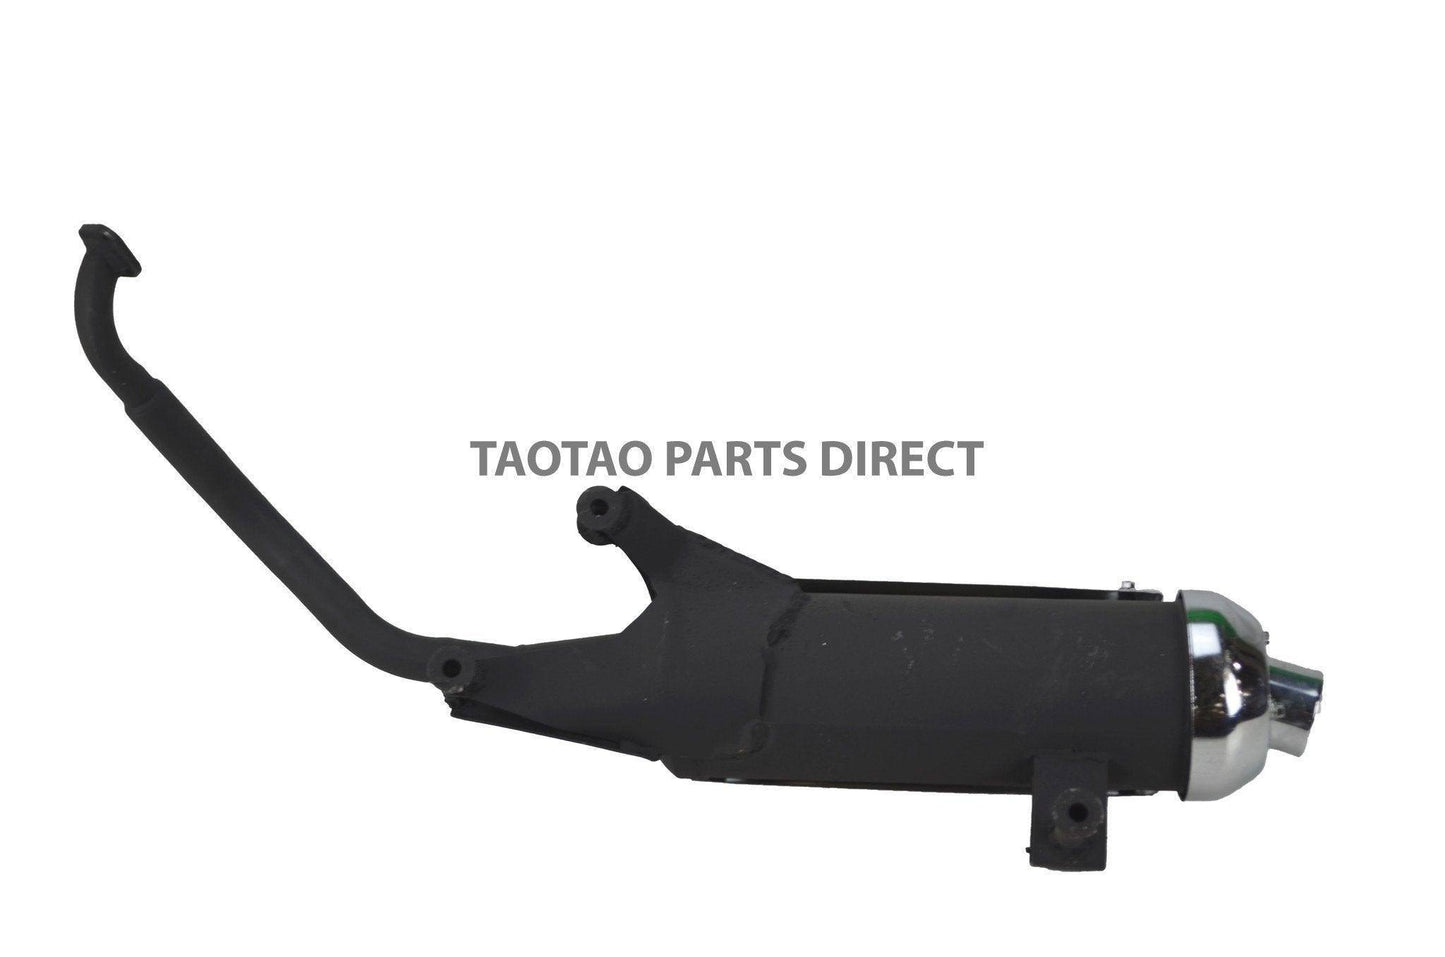 Powermax 150 Exhaust - TaoTao Parts Direct